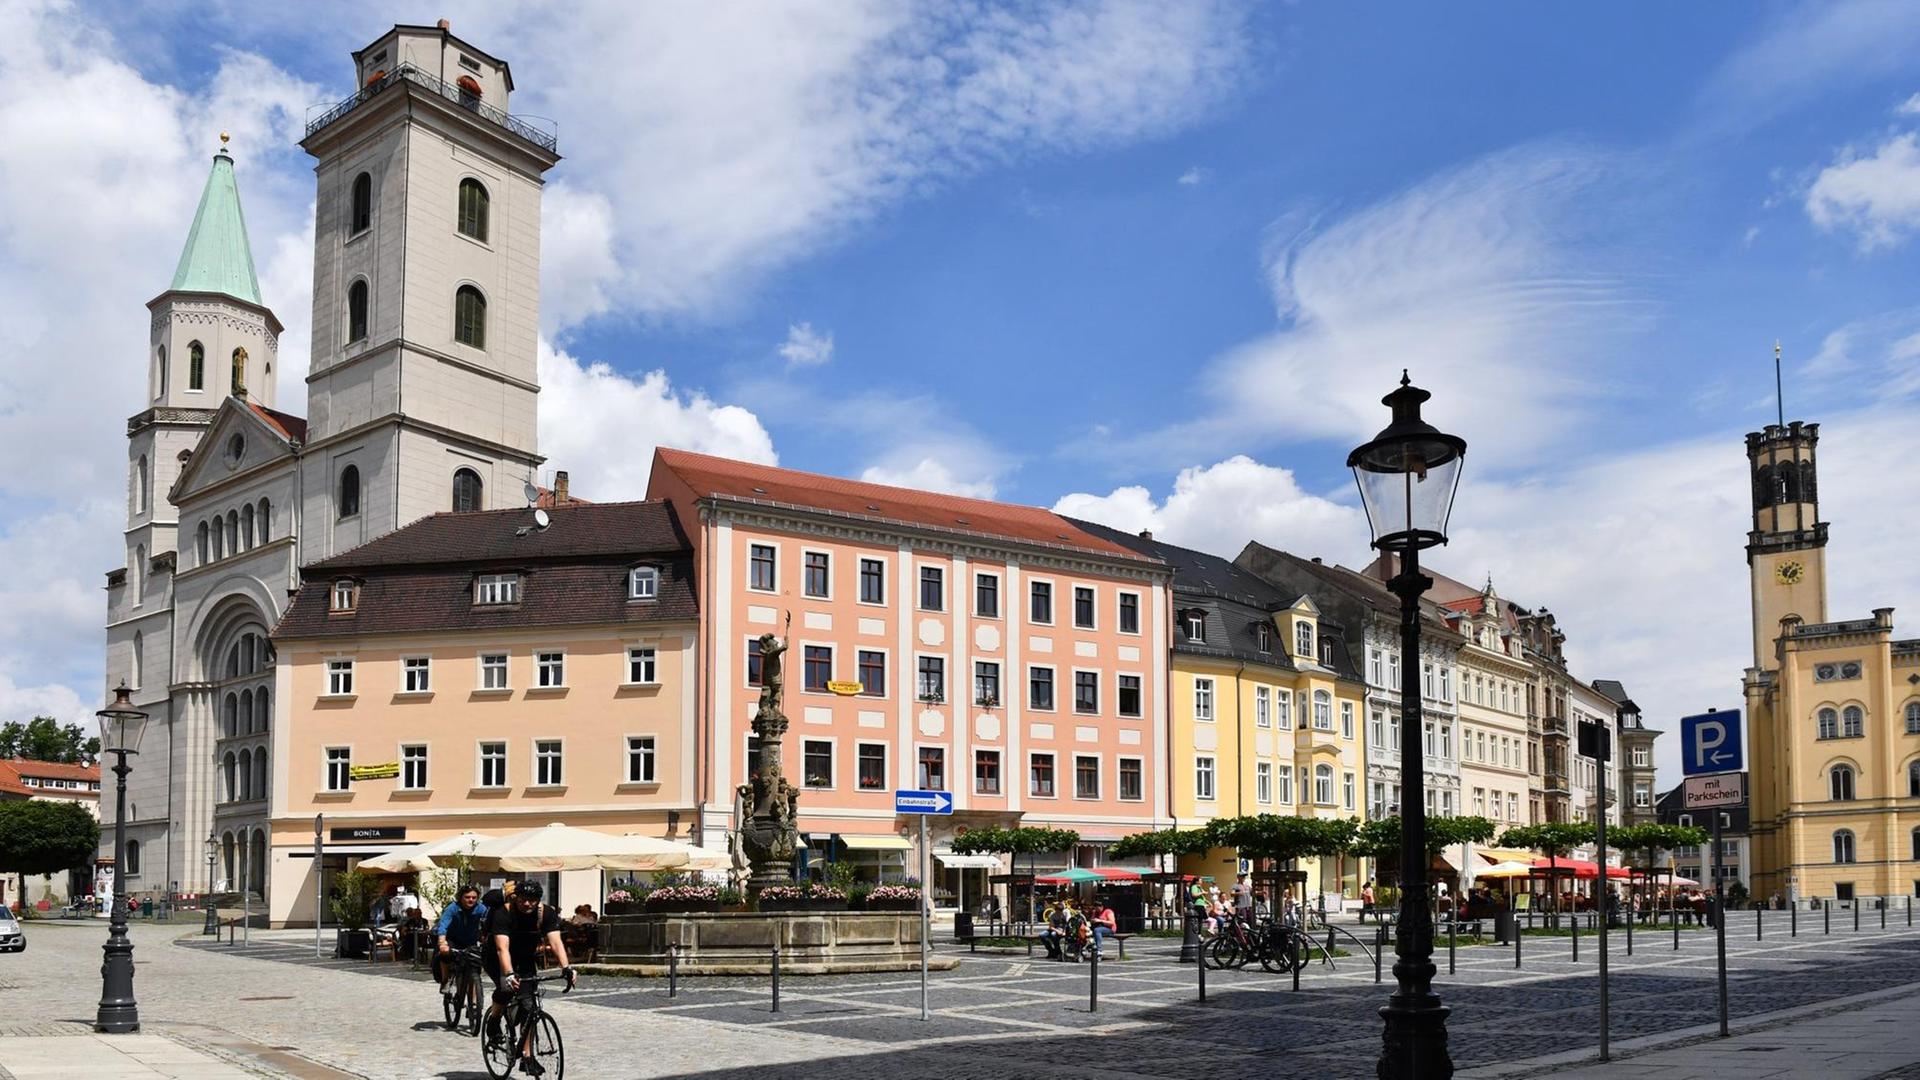 Die Johanniskirche, der Marsbrunnen, Wohn- und Geschäftshäuser und das Rathaus auf dem Marktplatz von Zittau (Sachsen).